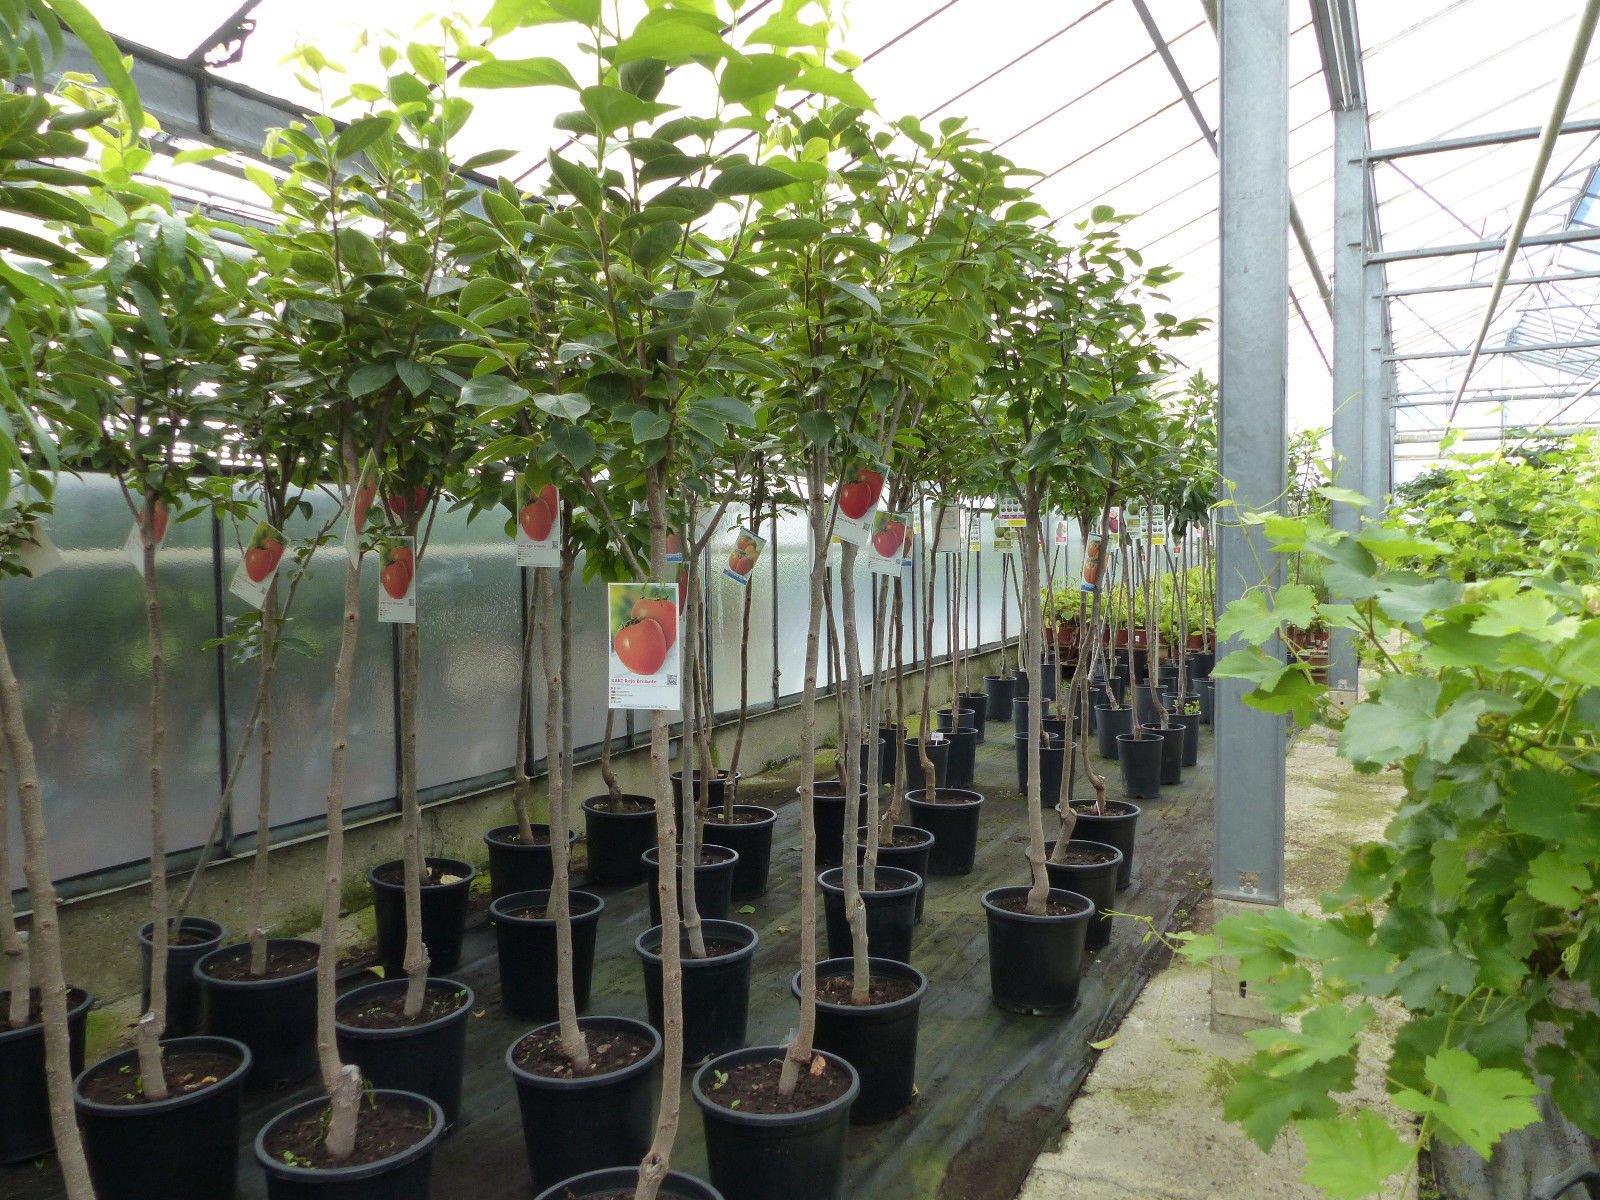 Kaki Baum 150-180 cm Sorte "Rojo Brilliante" Kakipflaume Pflanze